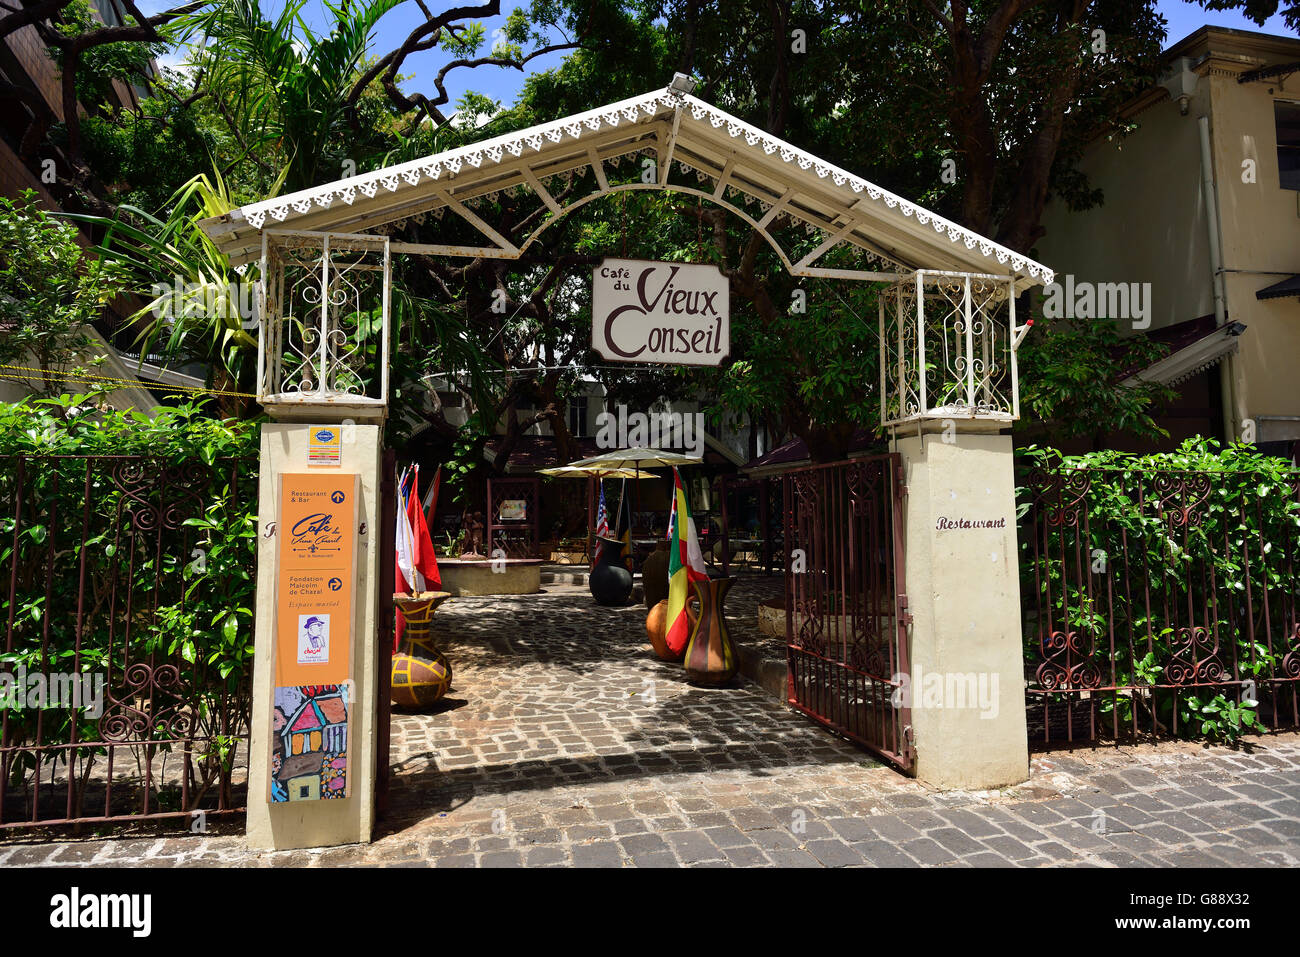 Cafe de Vieux Conseil, Port Louis, Mauritius Stock Photo